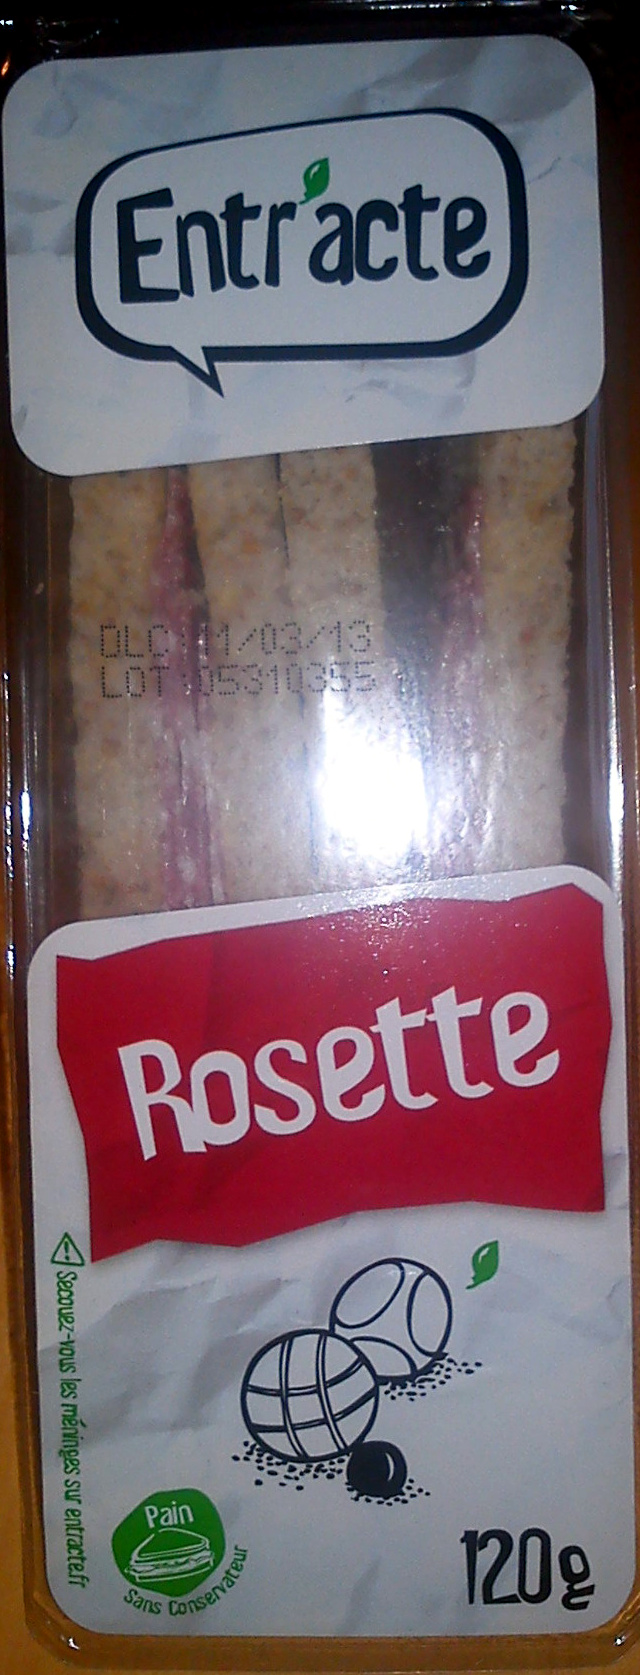 Rosette - Product - fr